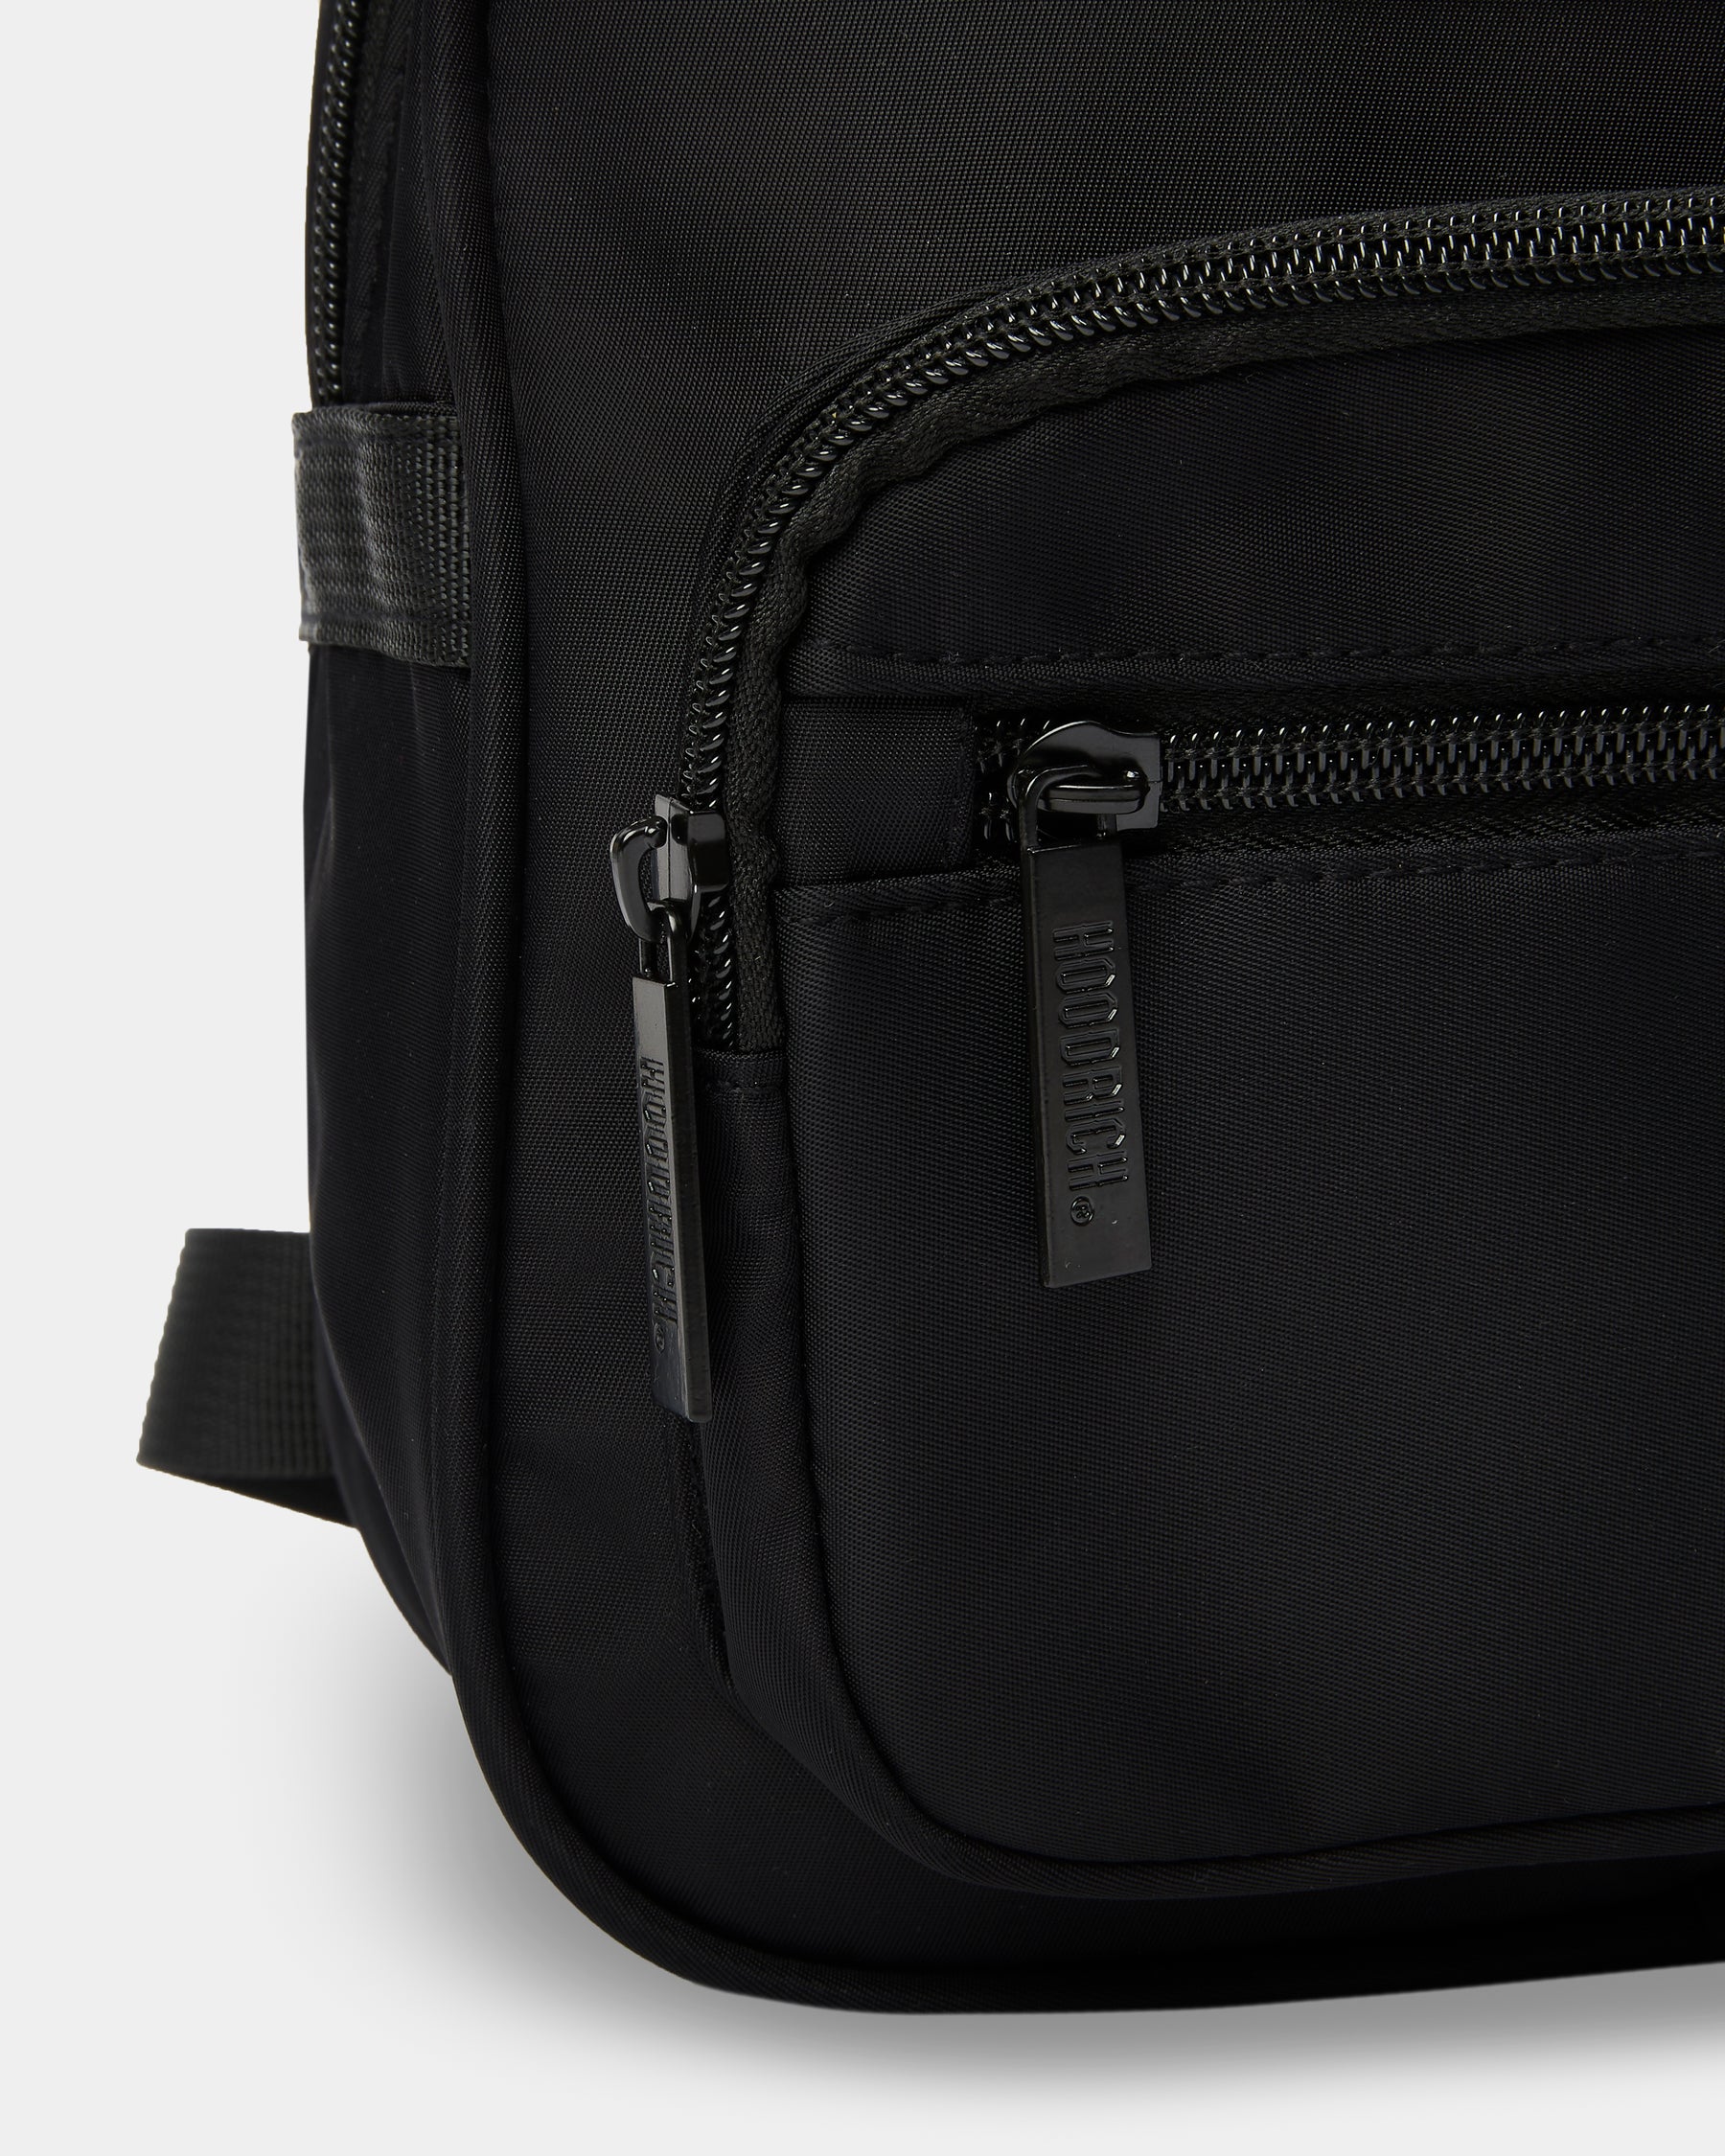 OG Core Women's Mini Backpack - Black/Silver